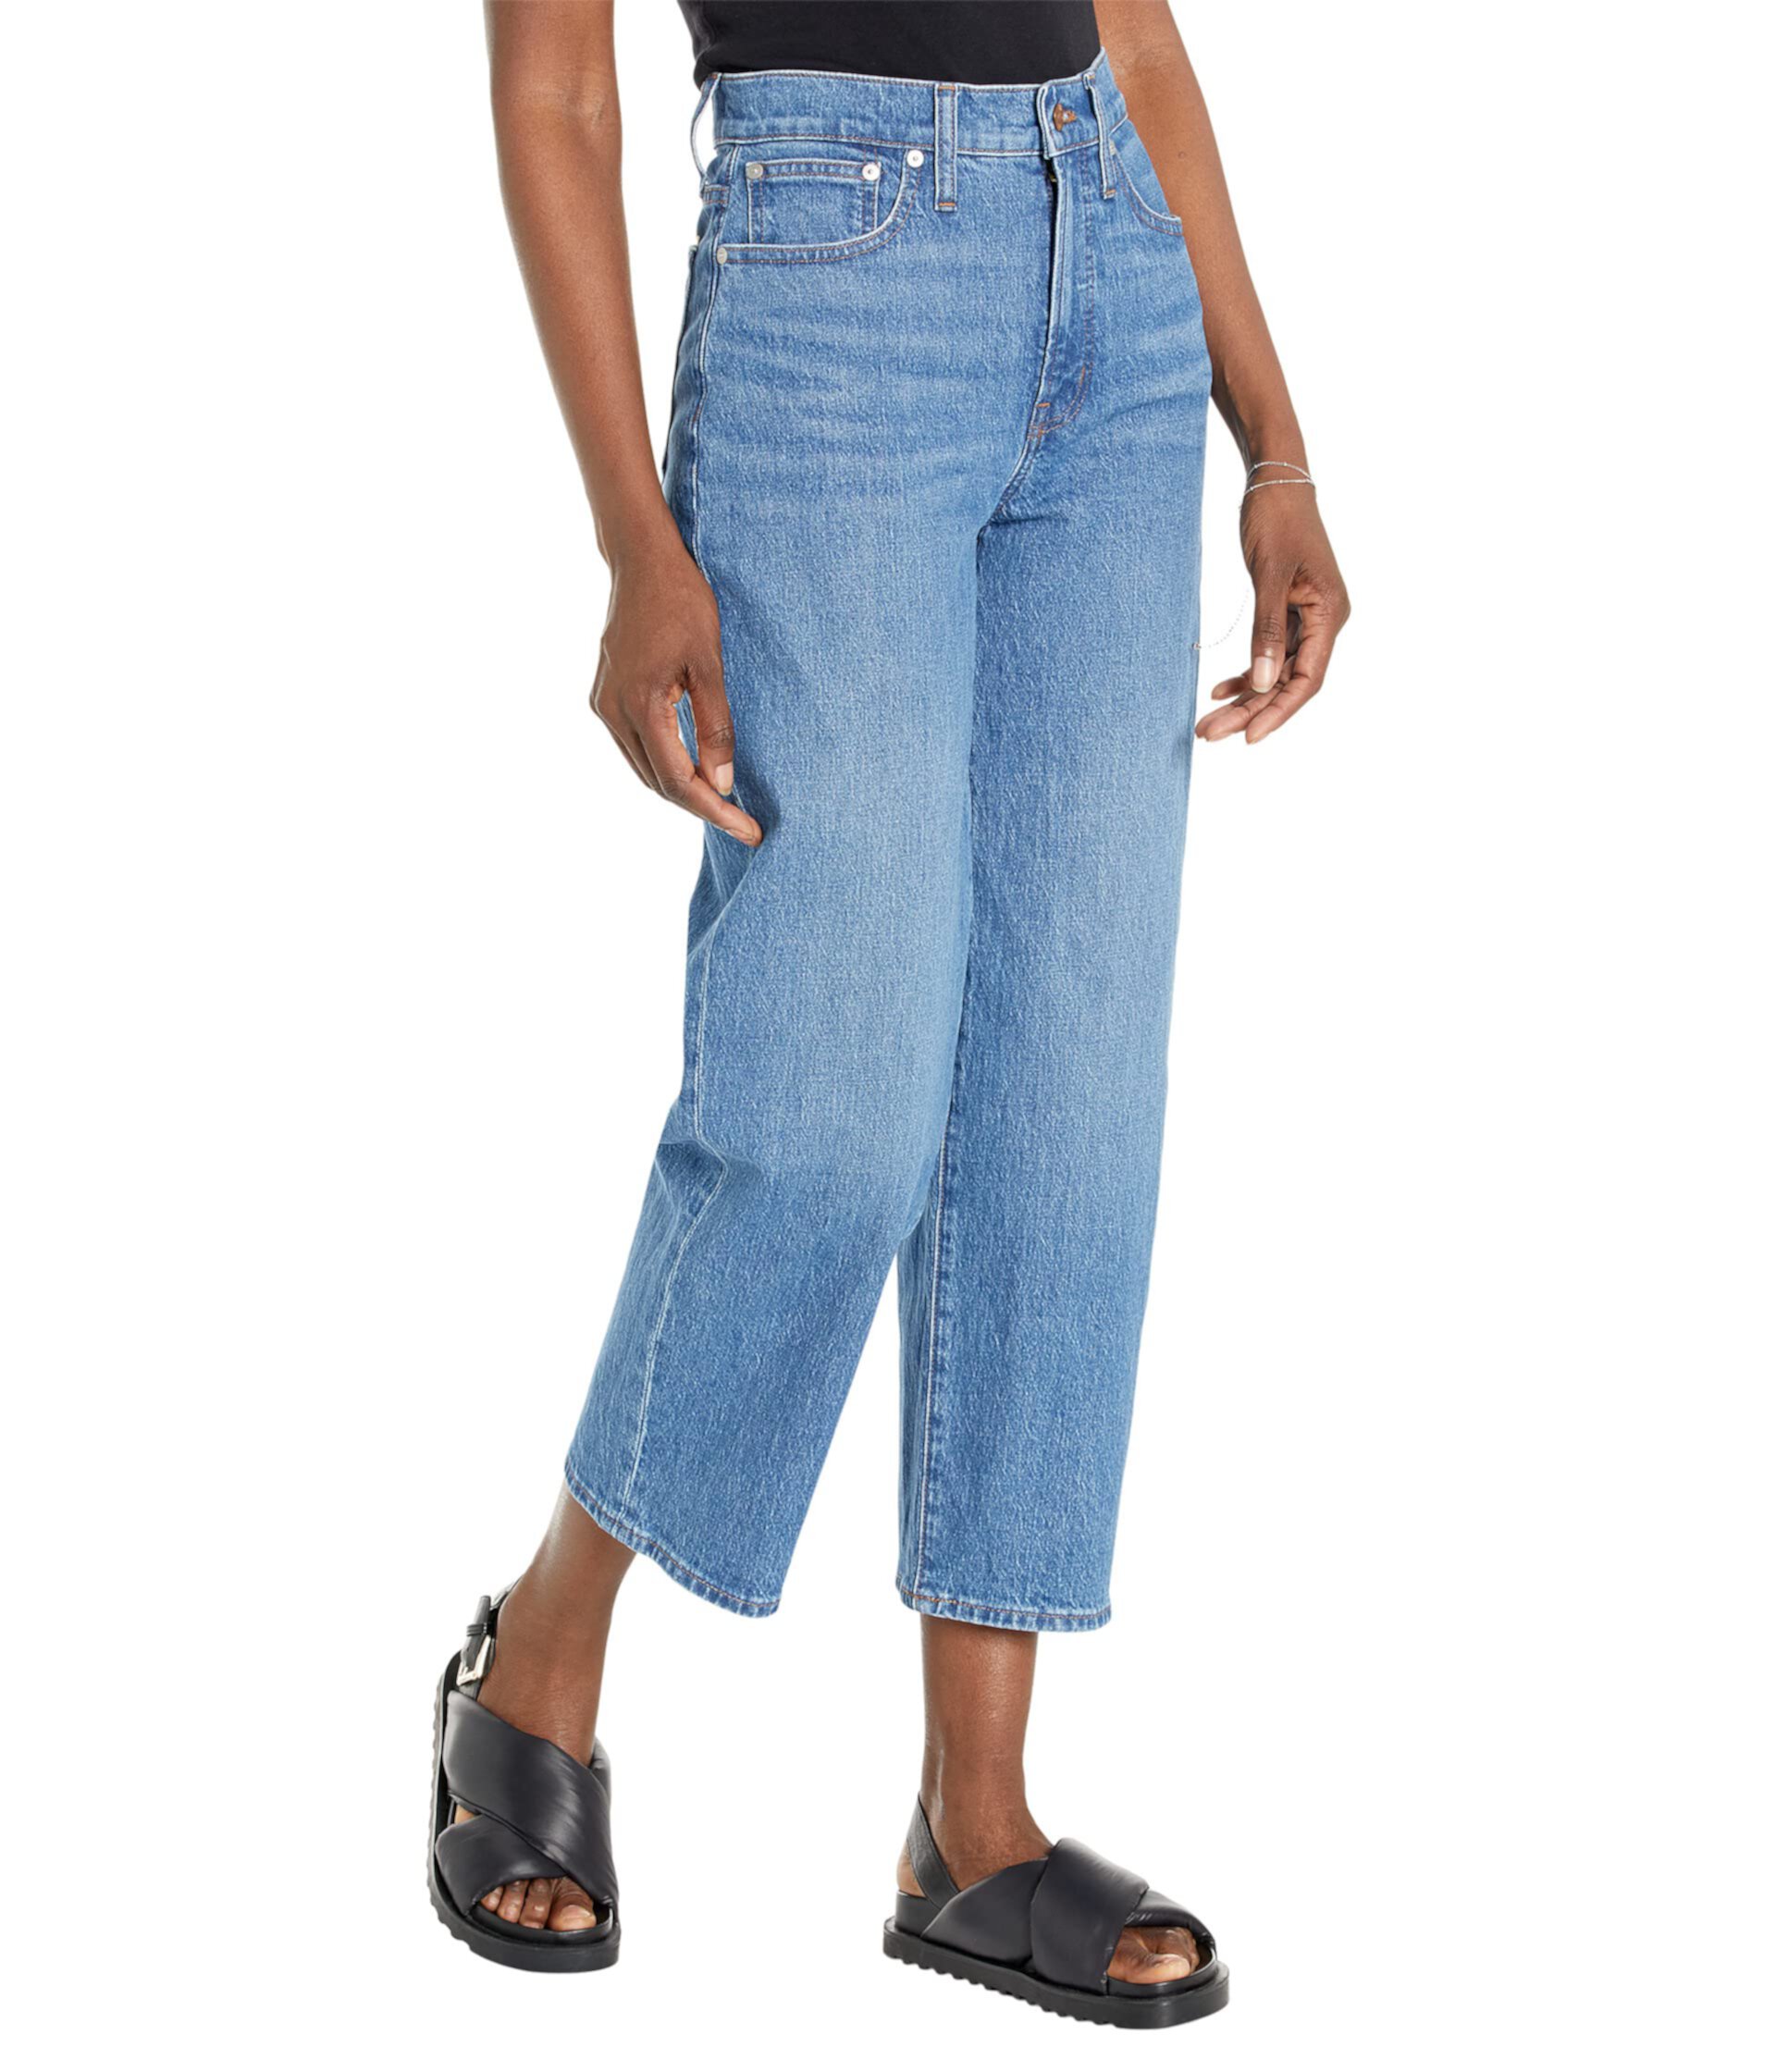 Укороченные джинсы с широкими штанинами Perfect Vintage цвета Cresslow Wash Madewell